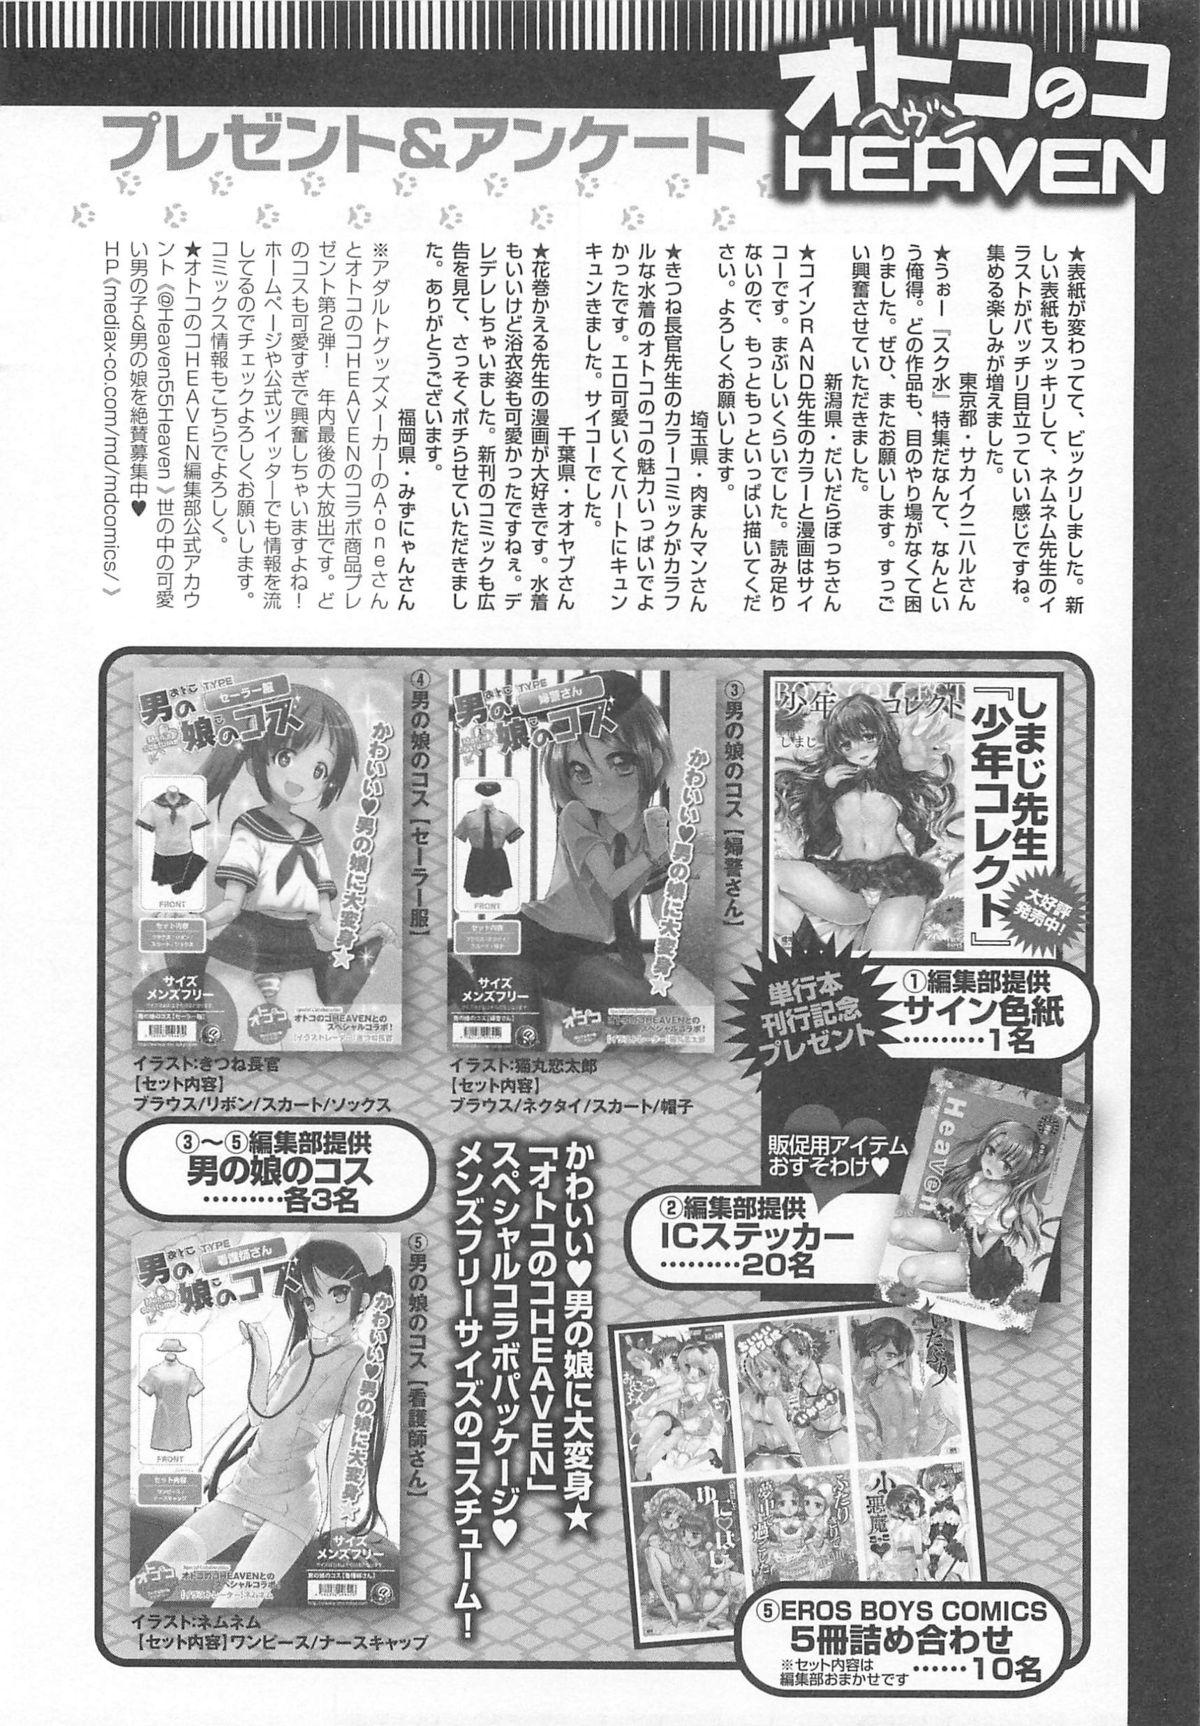 Otokonoko HEAVEN Vol.13 Junjou Bitch★Otokonoko 188